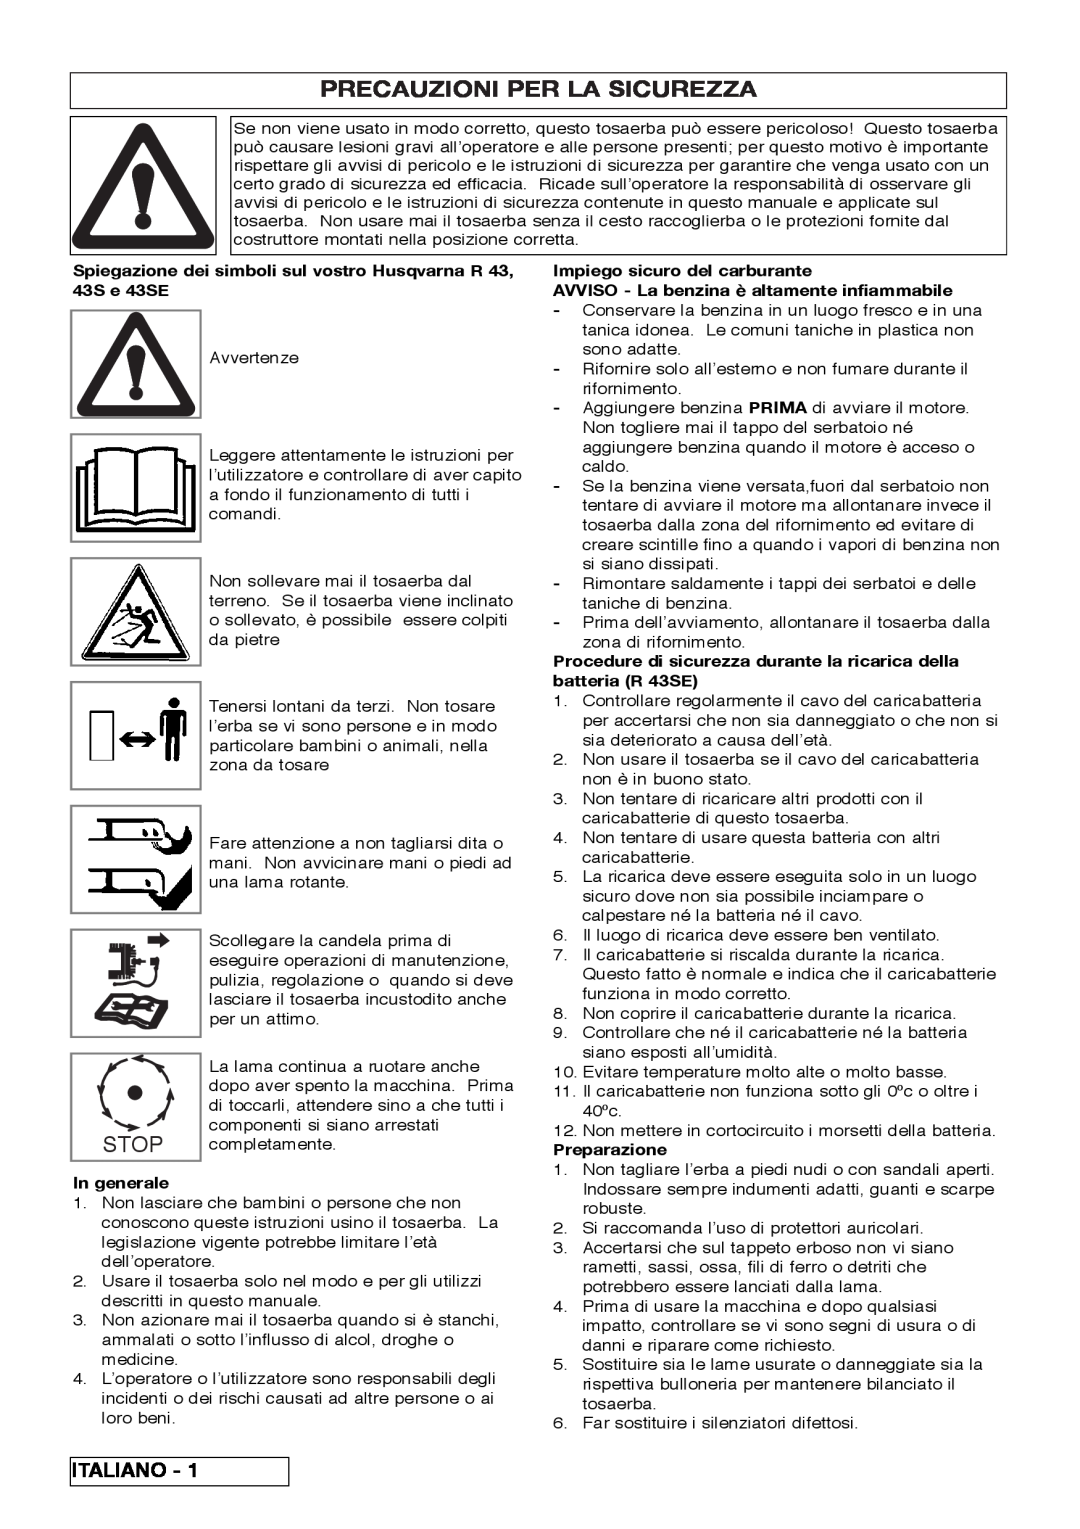 Husqvarna R 43SE manual Precauzioni Per La Sicurezza, Stop, Italiano 